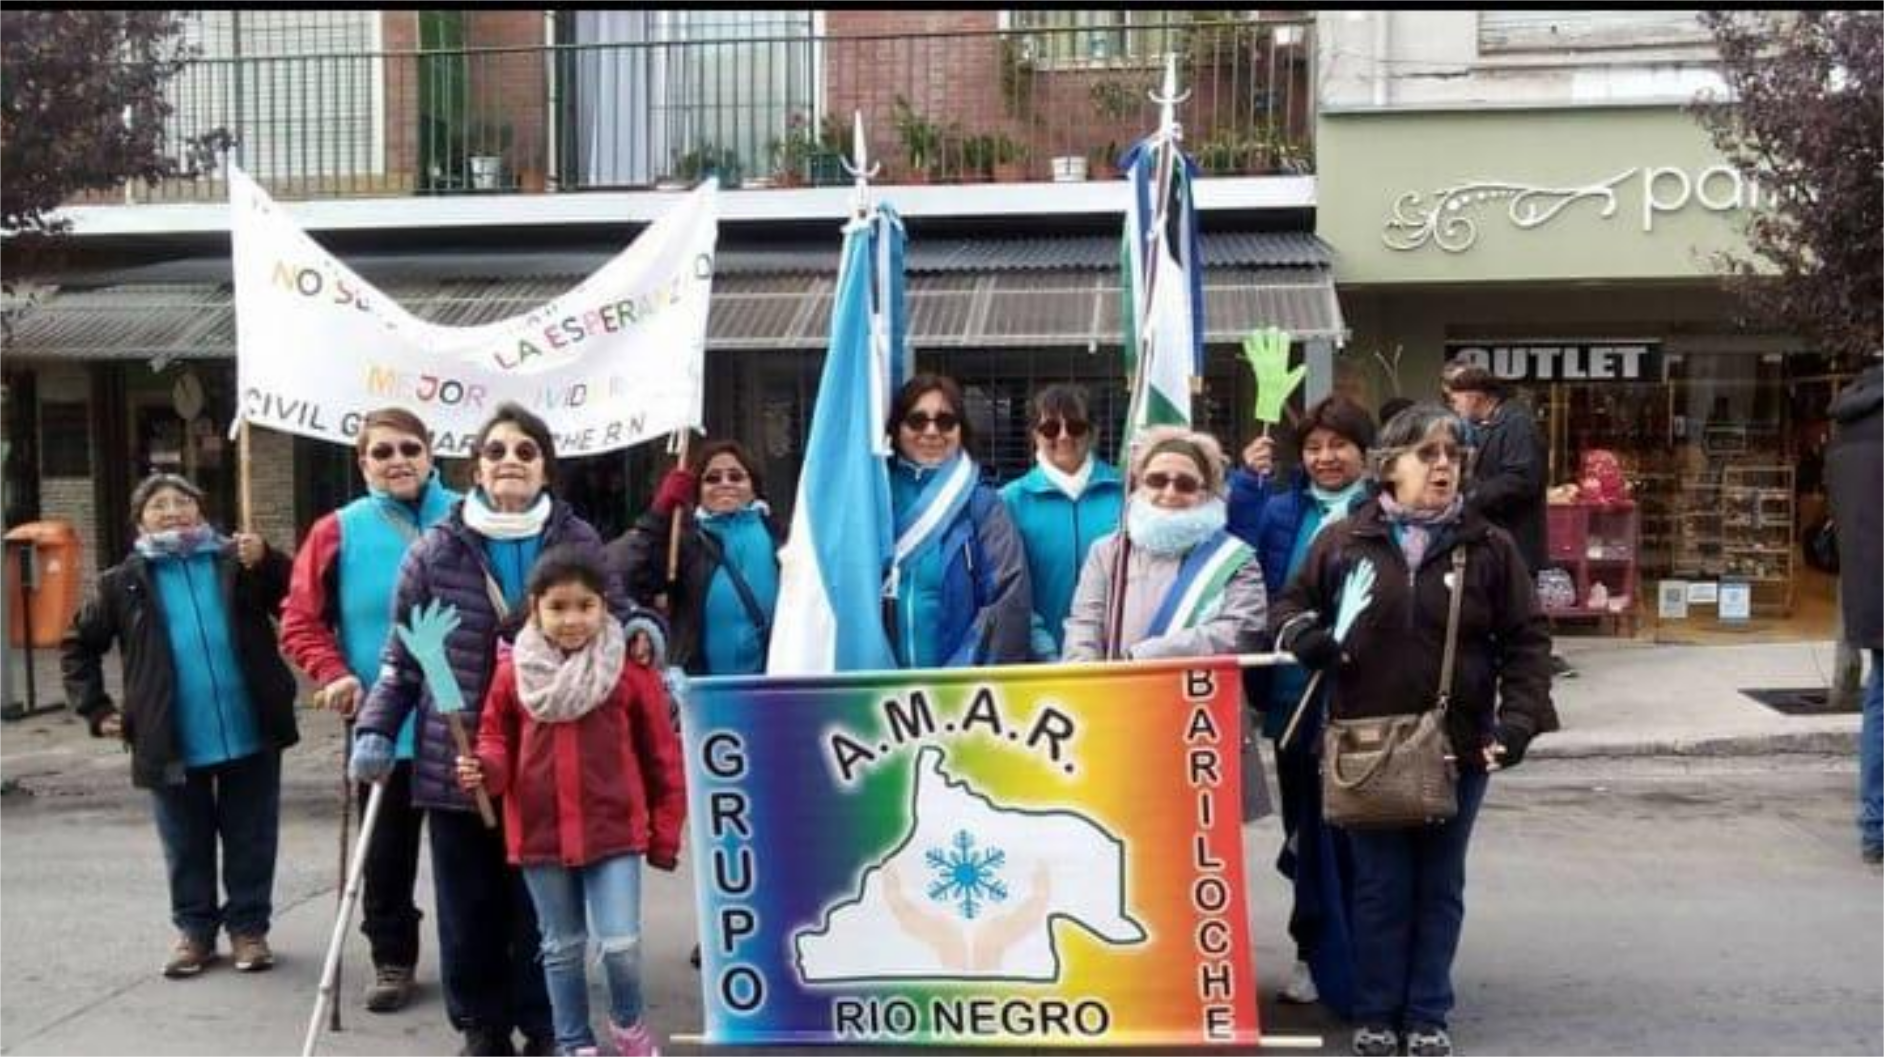 Fotografía de varias personas en la calle durante una actividad. Una mujer lleva la bandera y la banda de Argentina, y a su lado, otra mujer lleva la bandera y la banda de Río Negro. Además, frente a ellas sostienen un banner de "Grupo Amar"